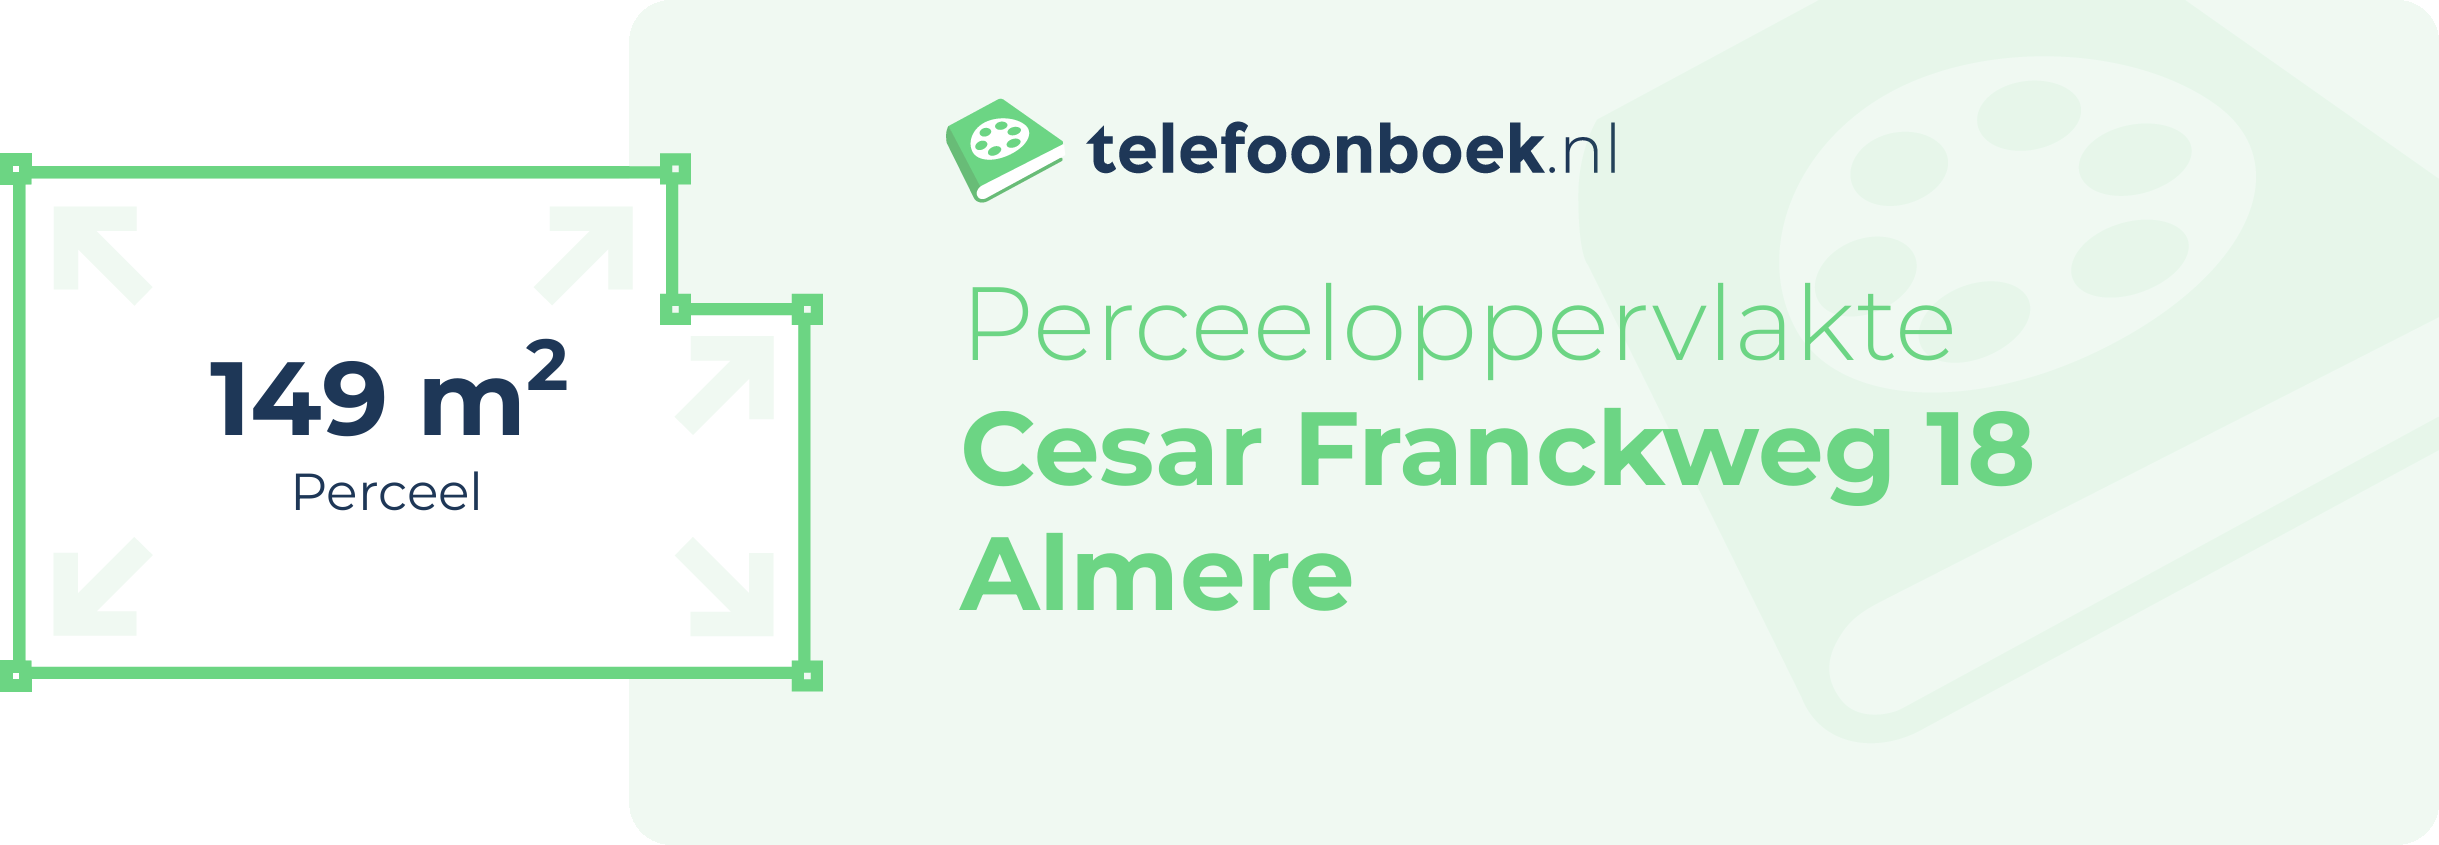 Perceeloppervlakte Cesar Franckweg 18 Almere